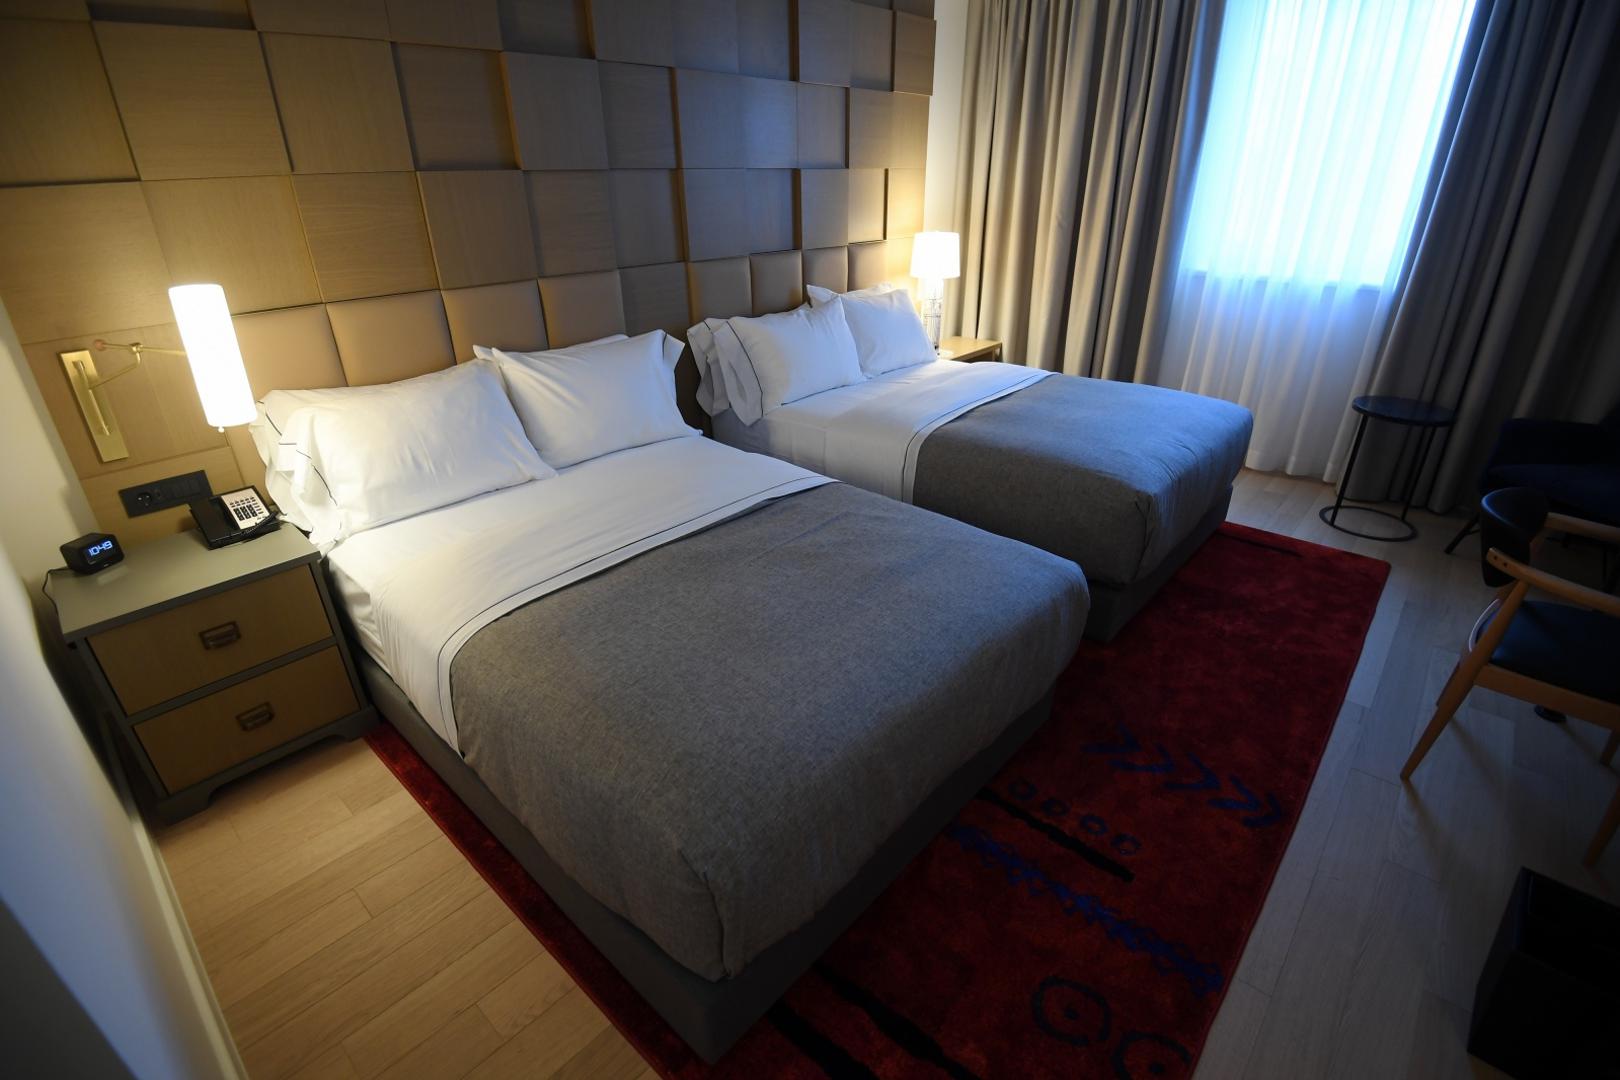 Spavaće sobe su  minimalističke, jednostavne, a posebne su po tome što ništa u njima nije napravljeno na industrijskoj bazi